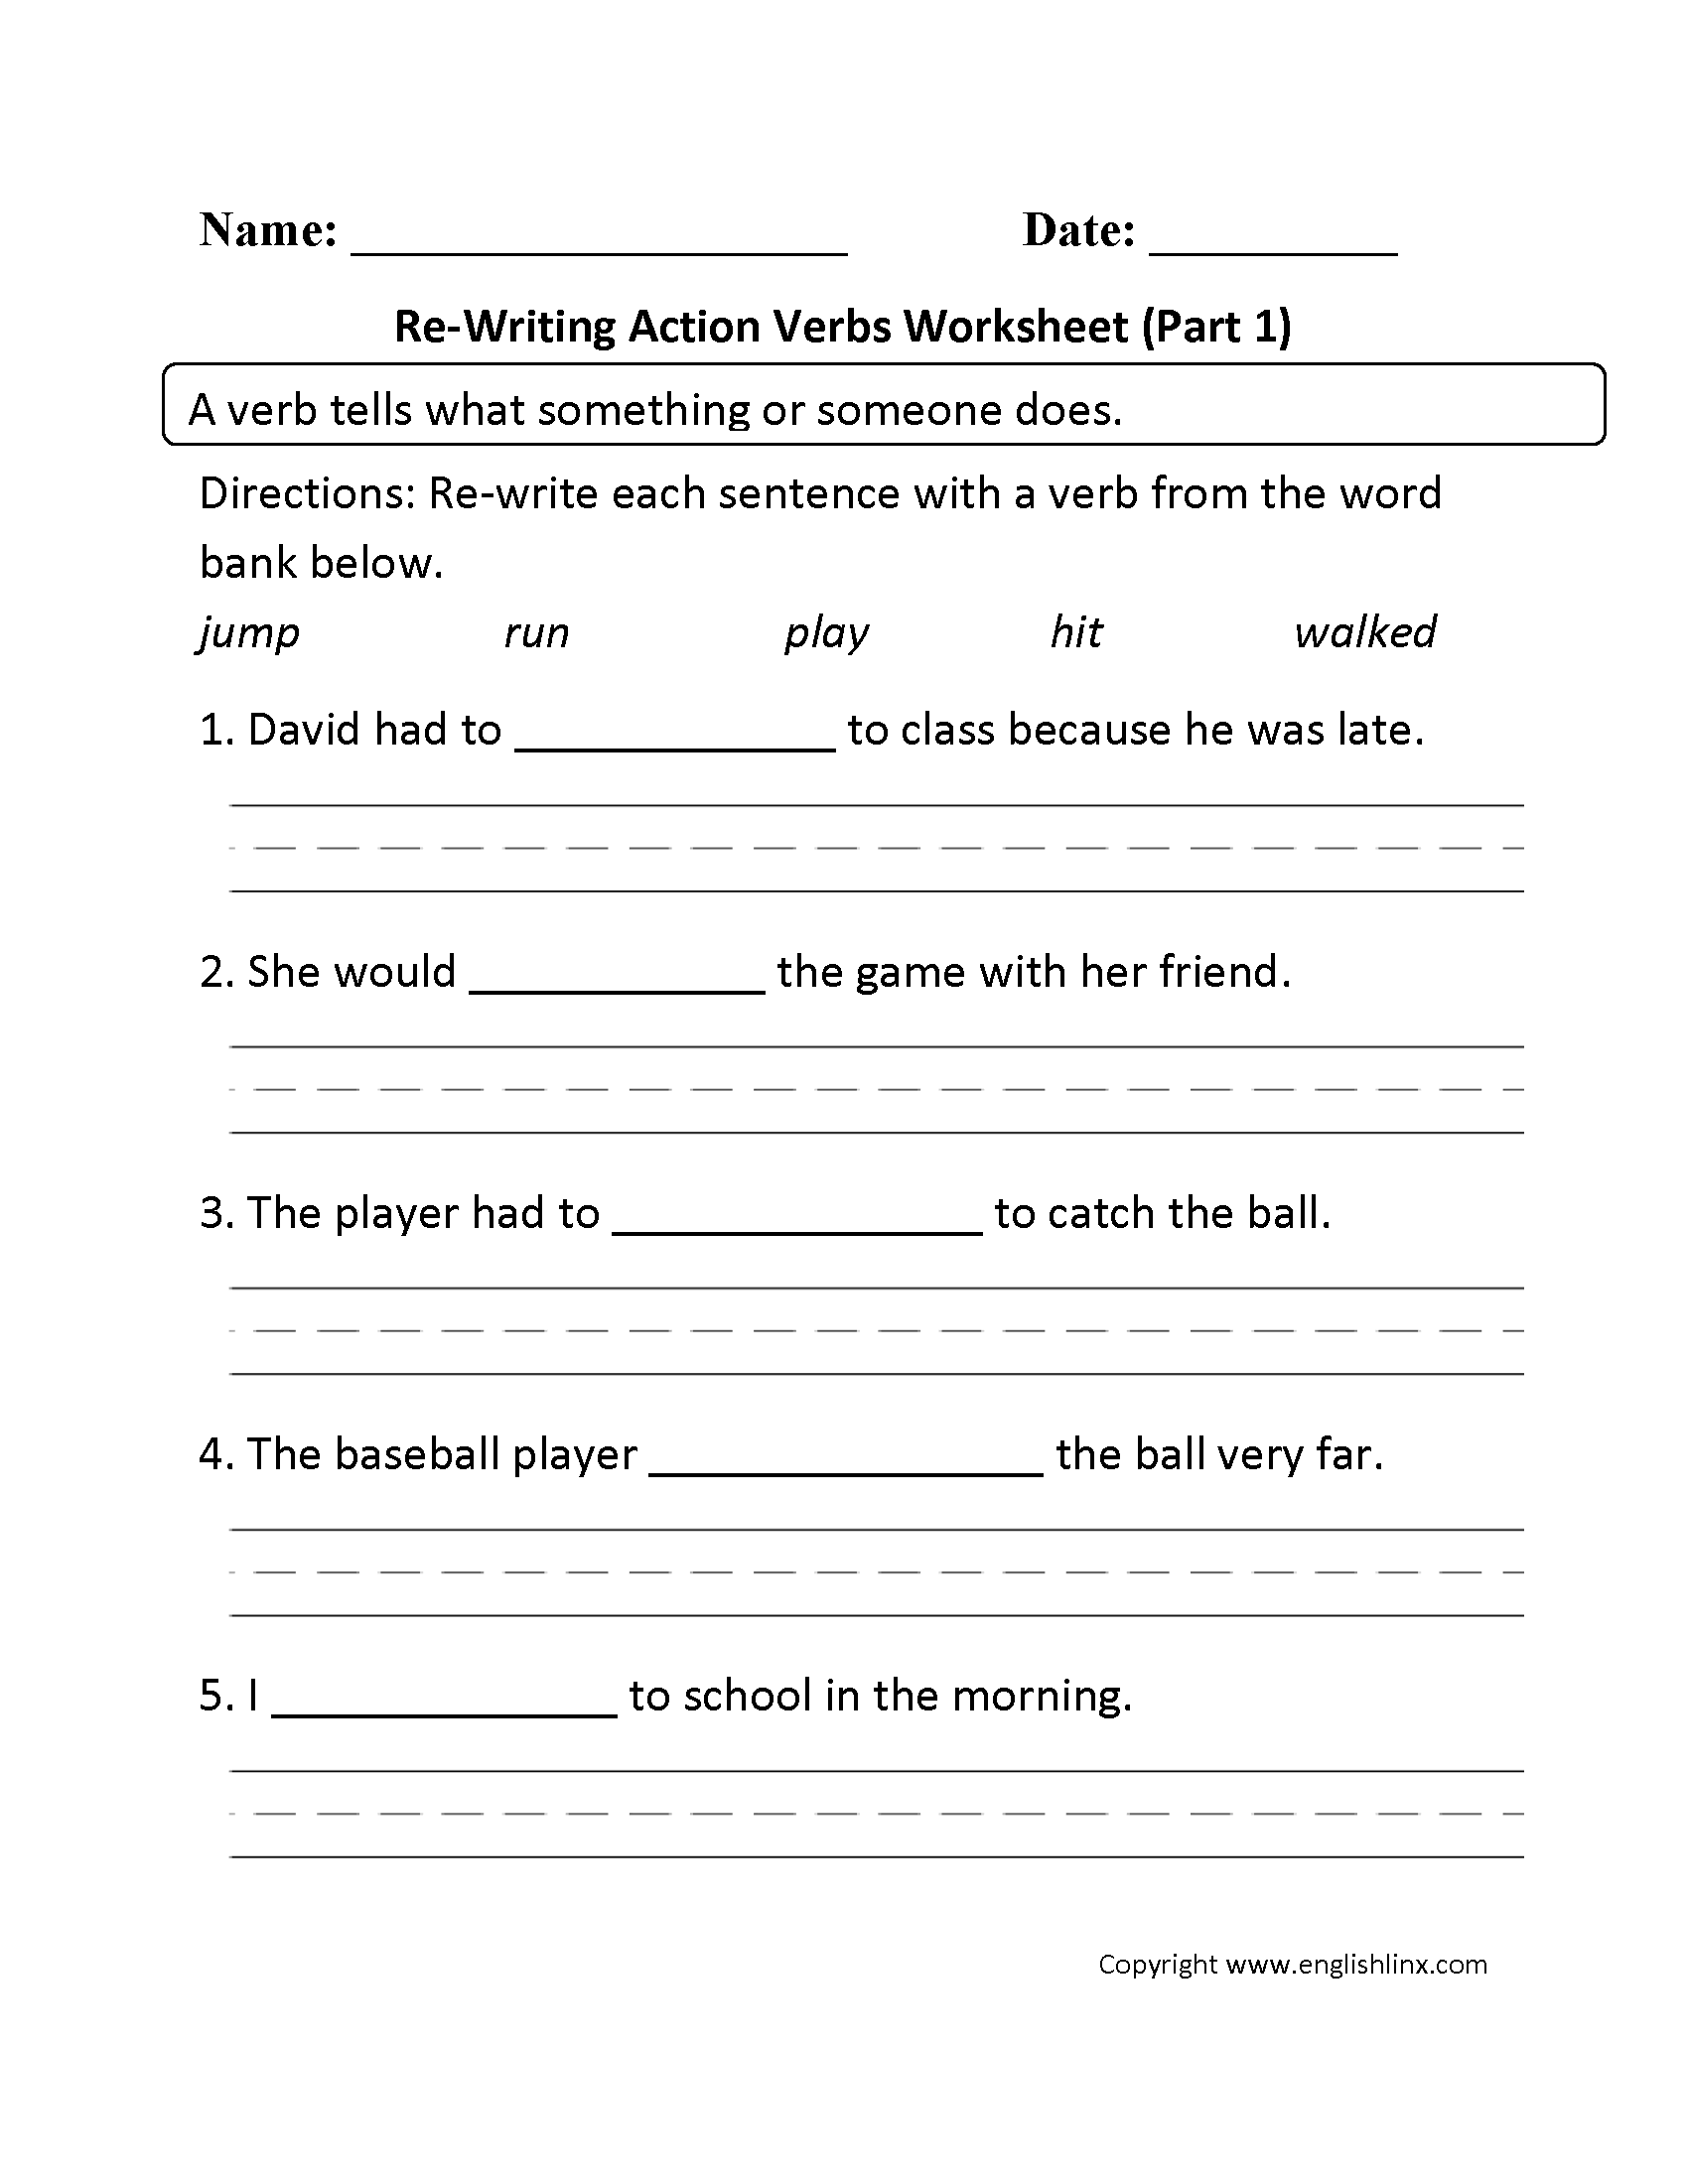 identify-the-verbs-worksheet-worksheets-free